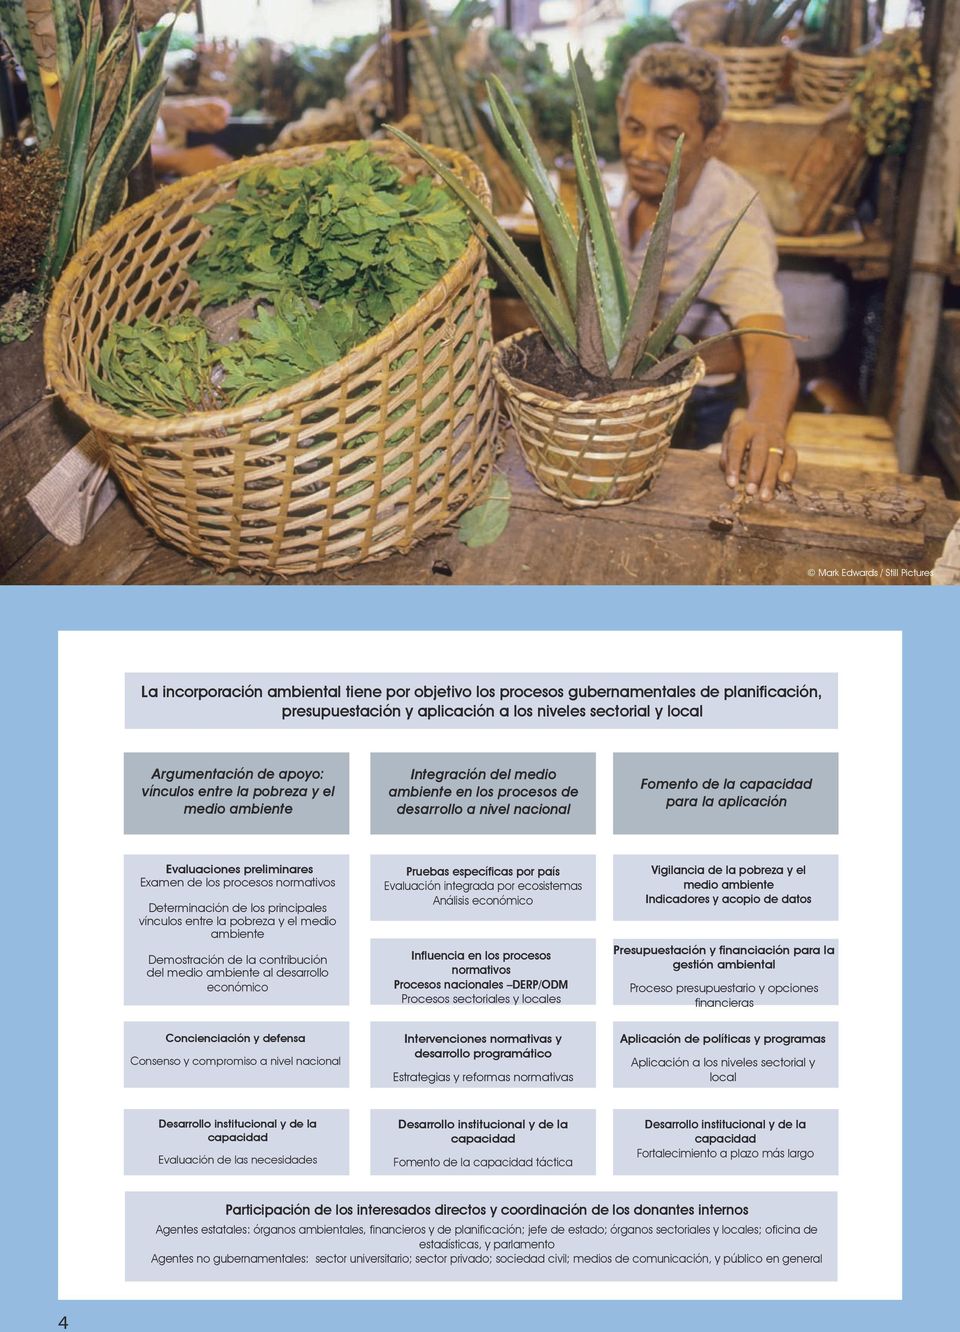 preliminares Examen de los procesos normativos Determinación de los principales vínculos entre la pobreza y el medio ambiente Demostración de la contribución del medio ambiente al desarrollo